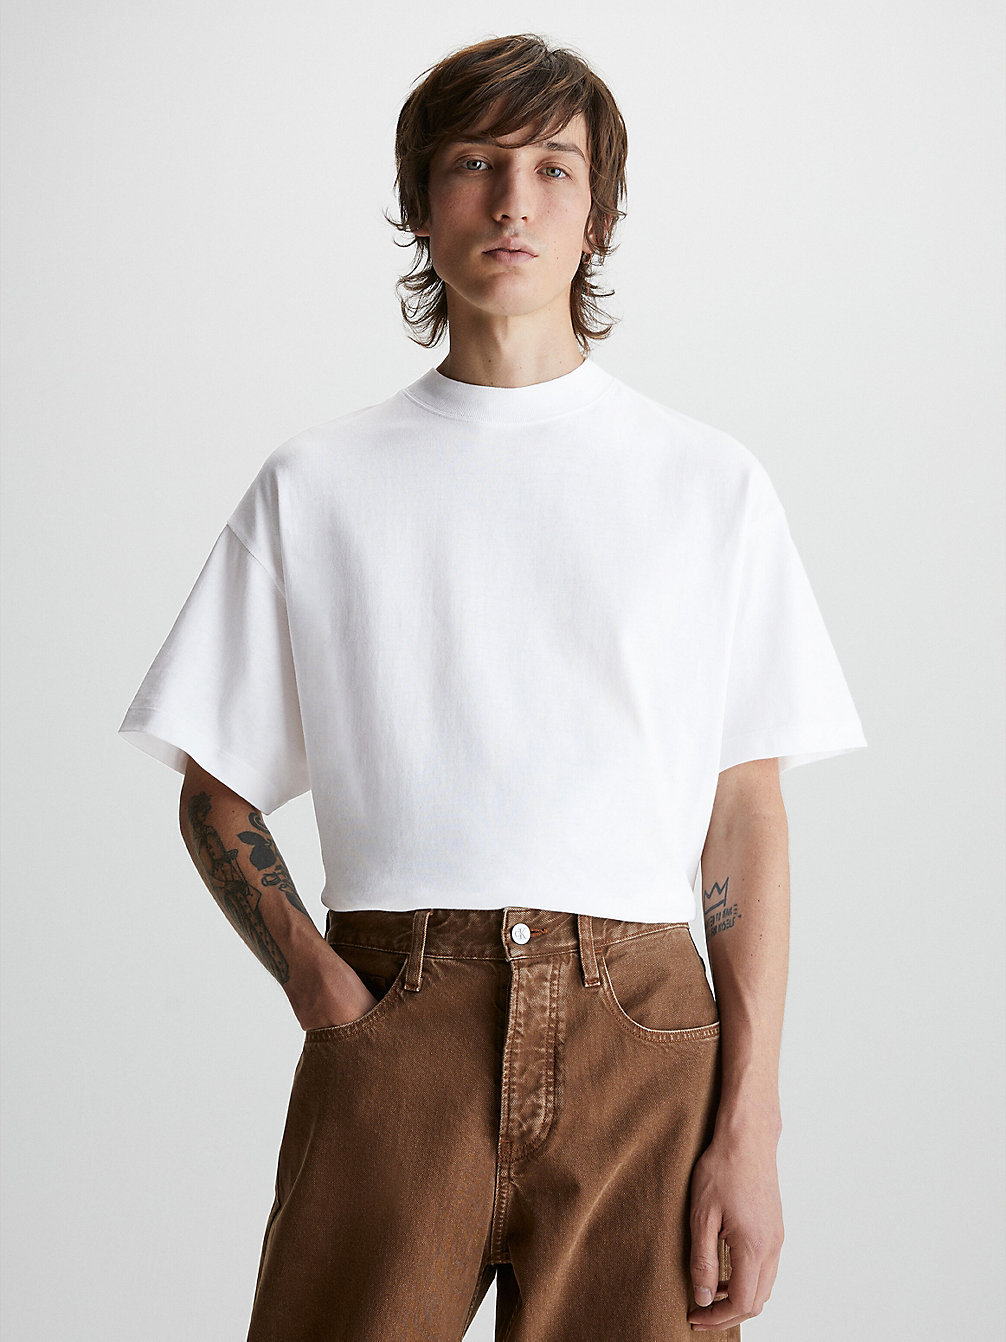 BRIGHT WHITE > Габаритная футболка унисекс > undefined unisex - Calvin Klein